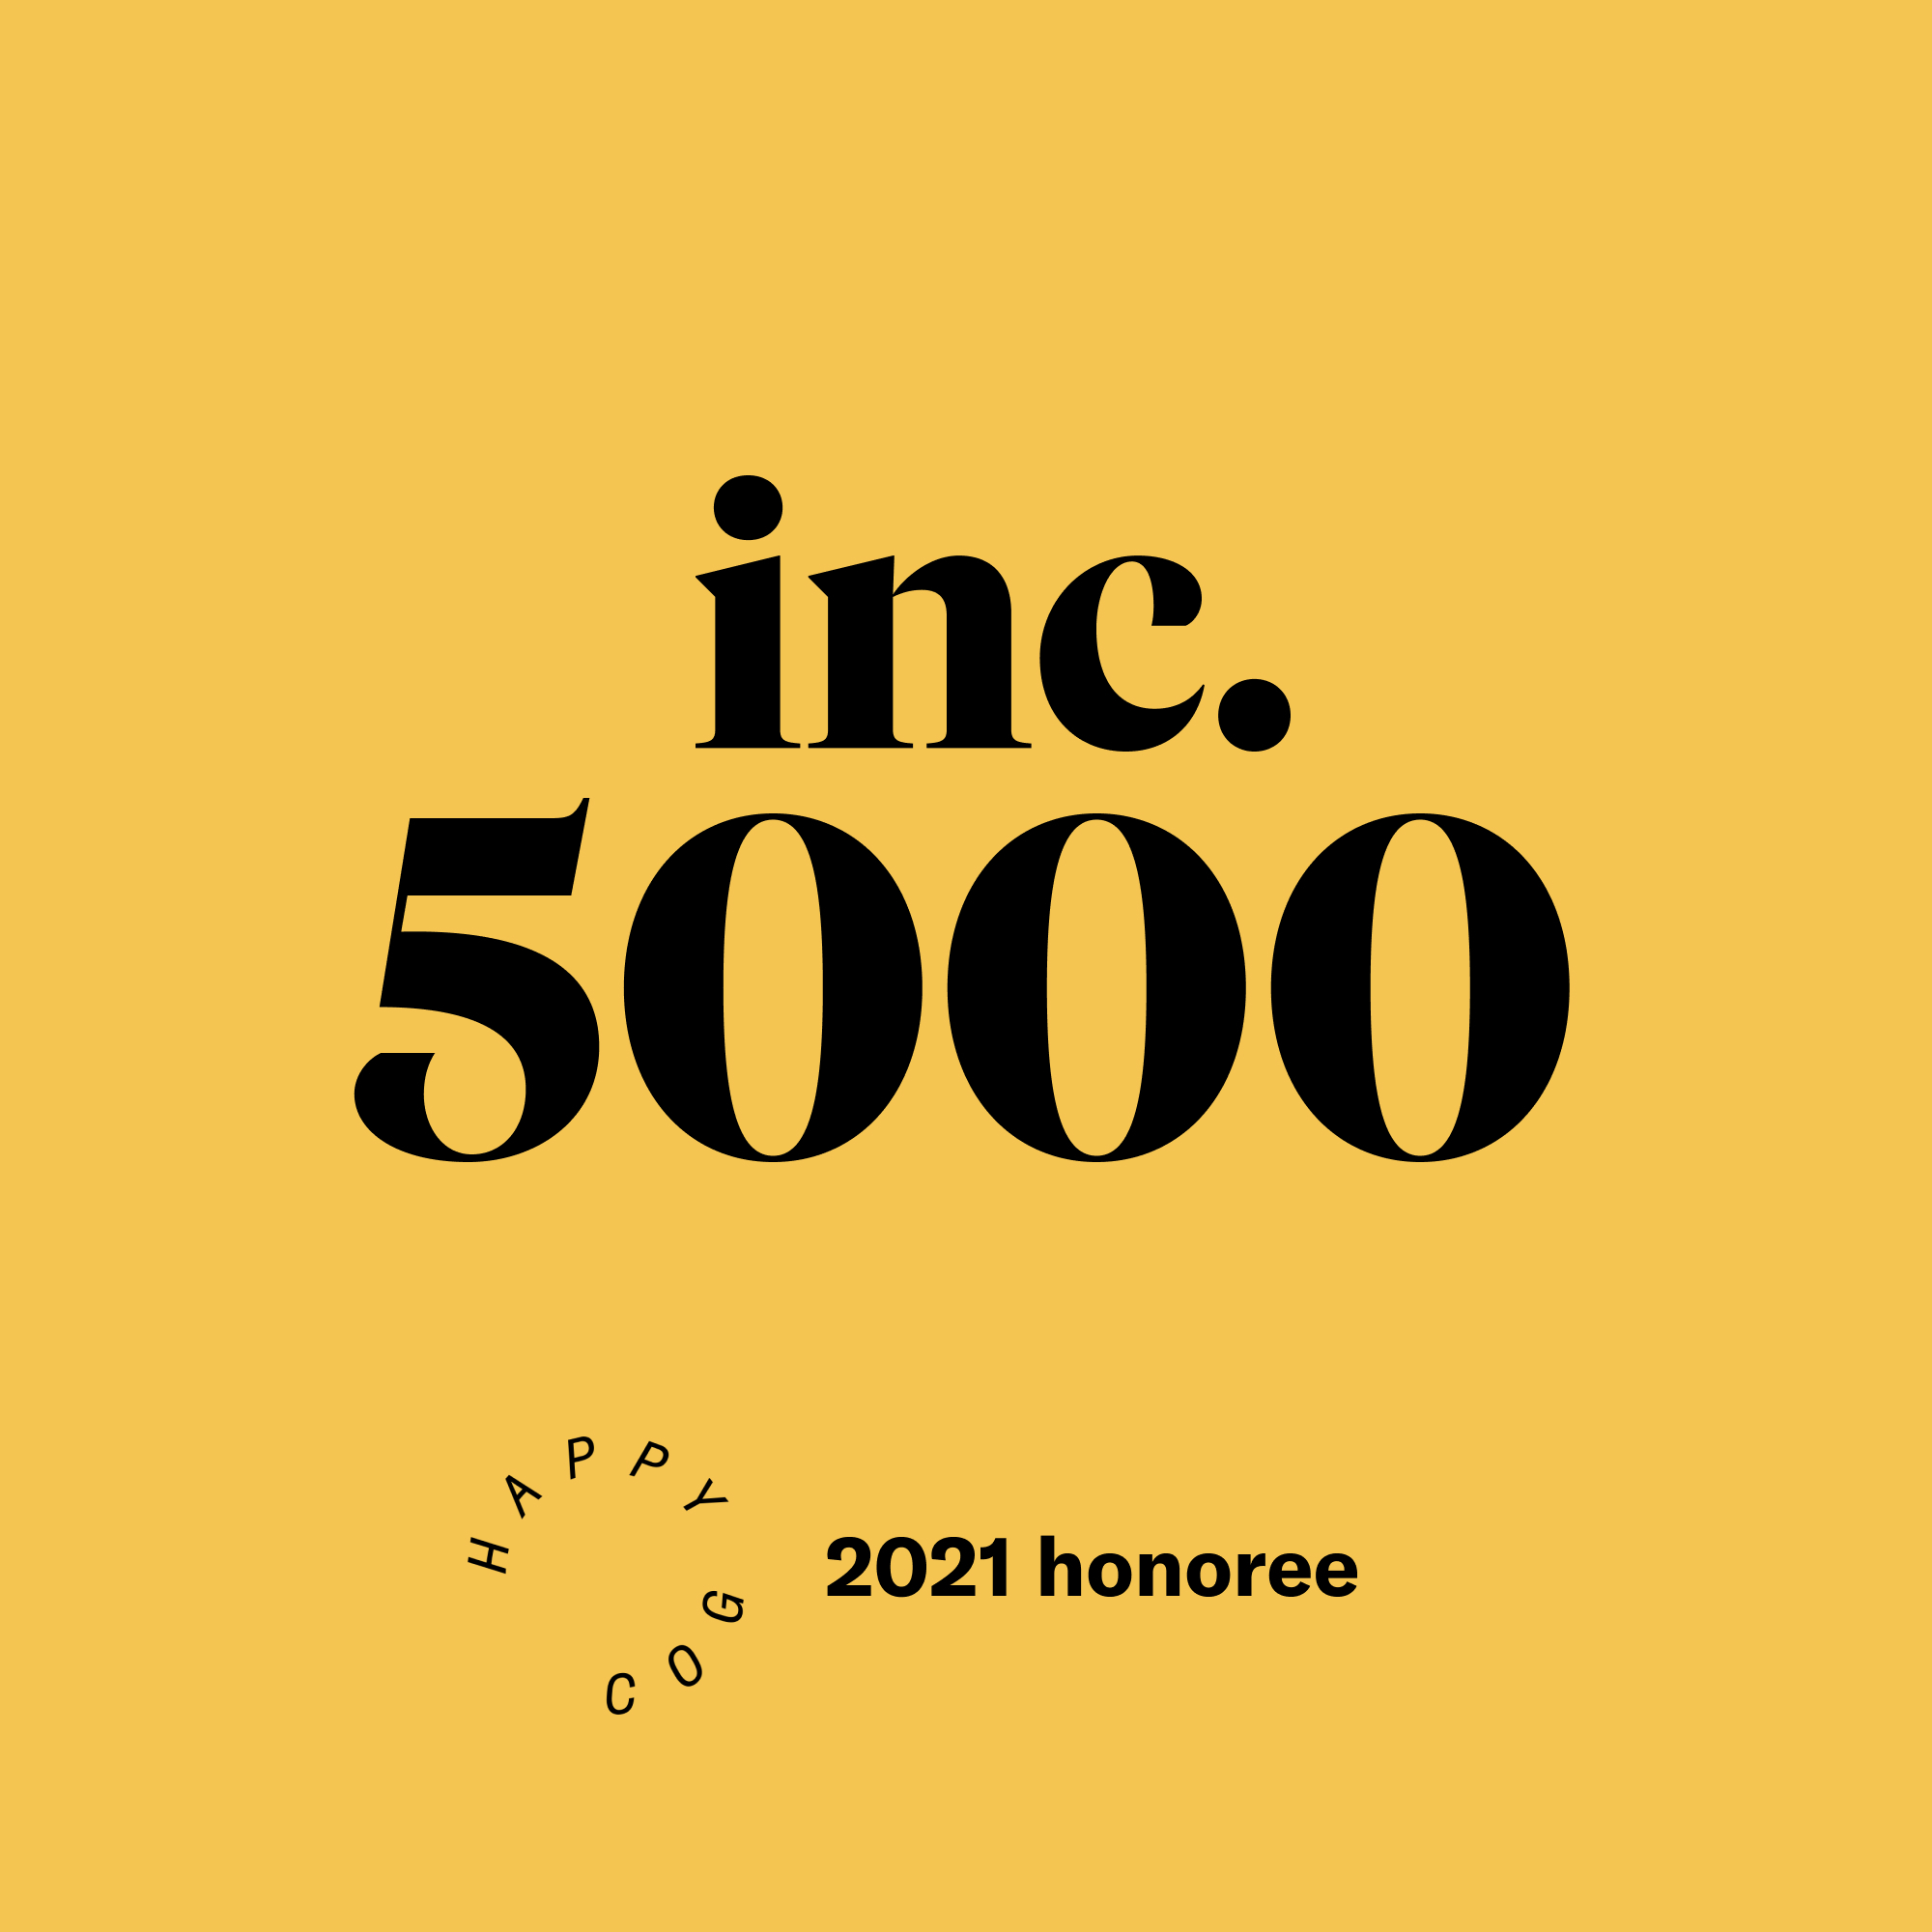 inc. 5000 honoree